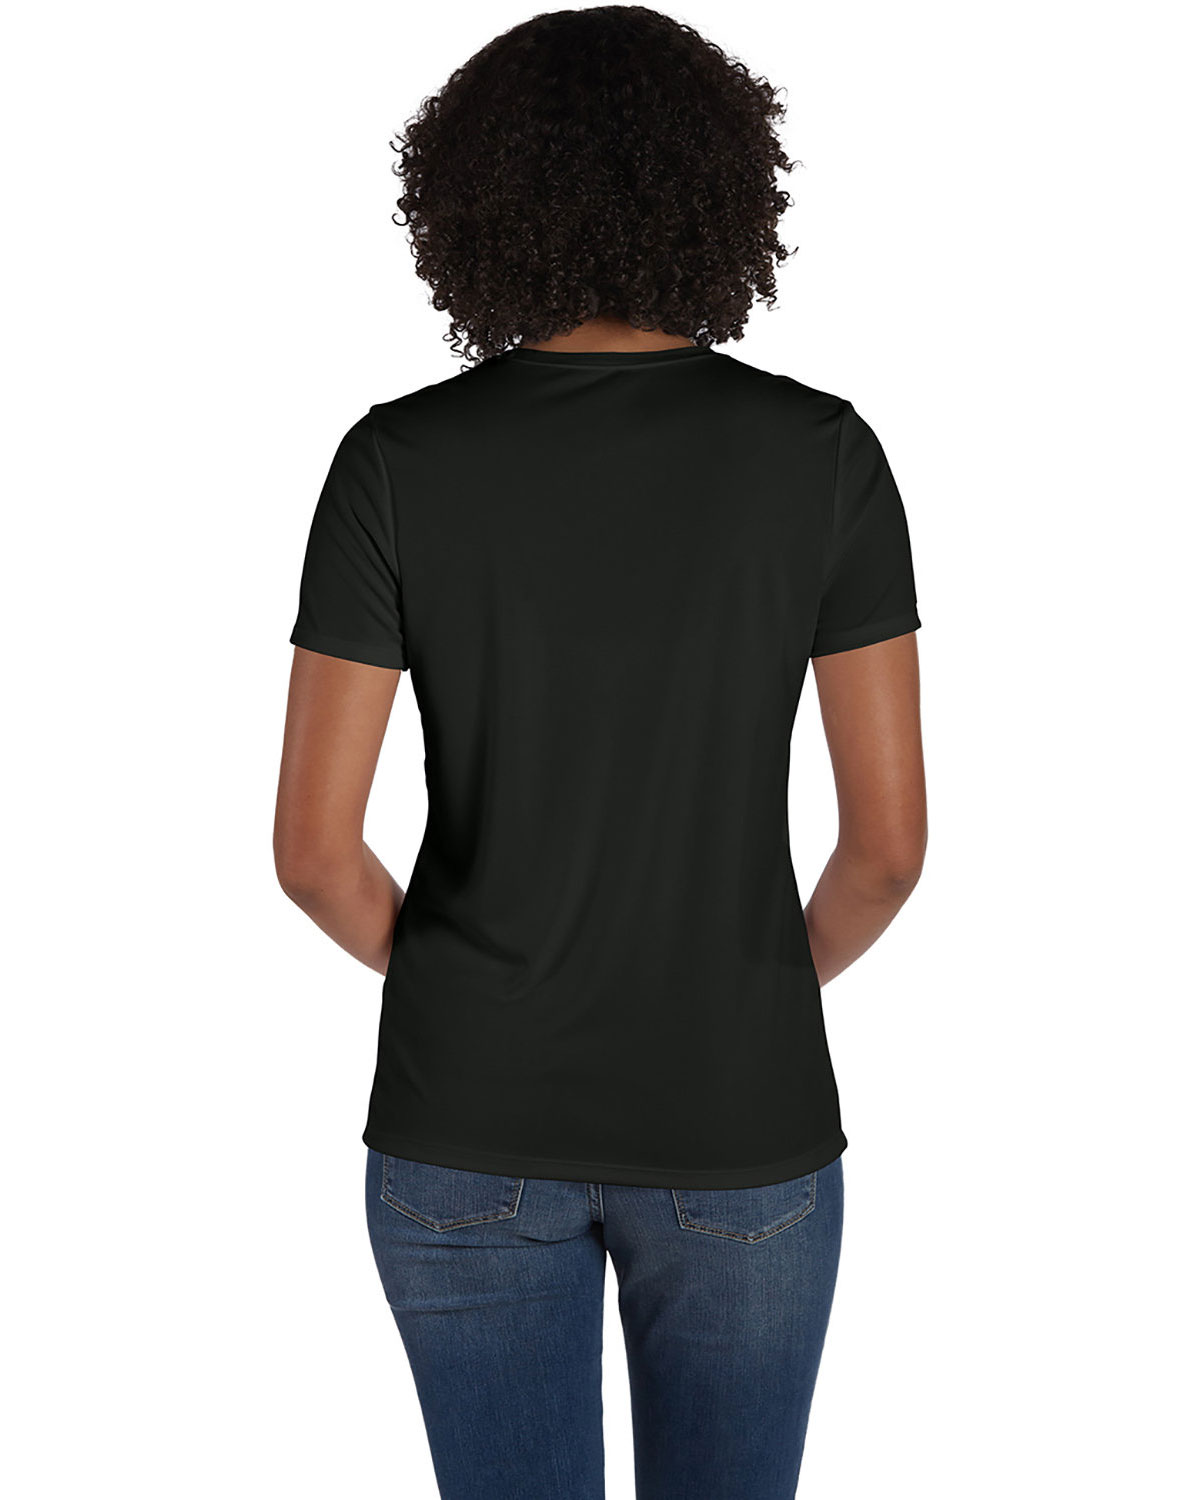 Hanes 4830 Women 4 oz. Cool Dri T-Shirt | GotApparel.com